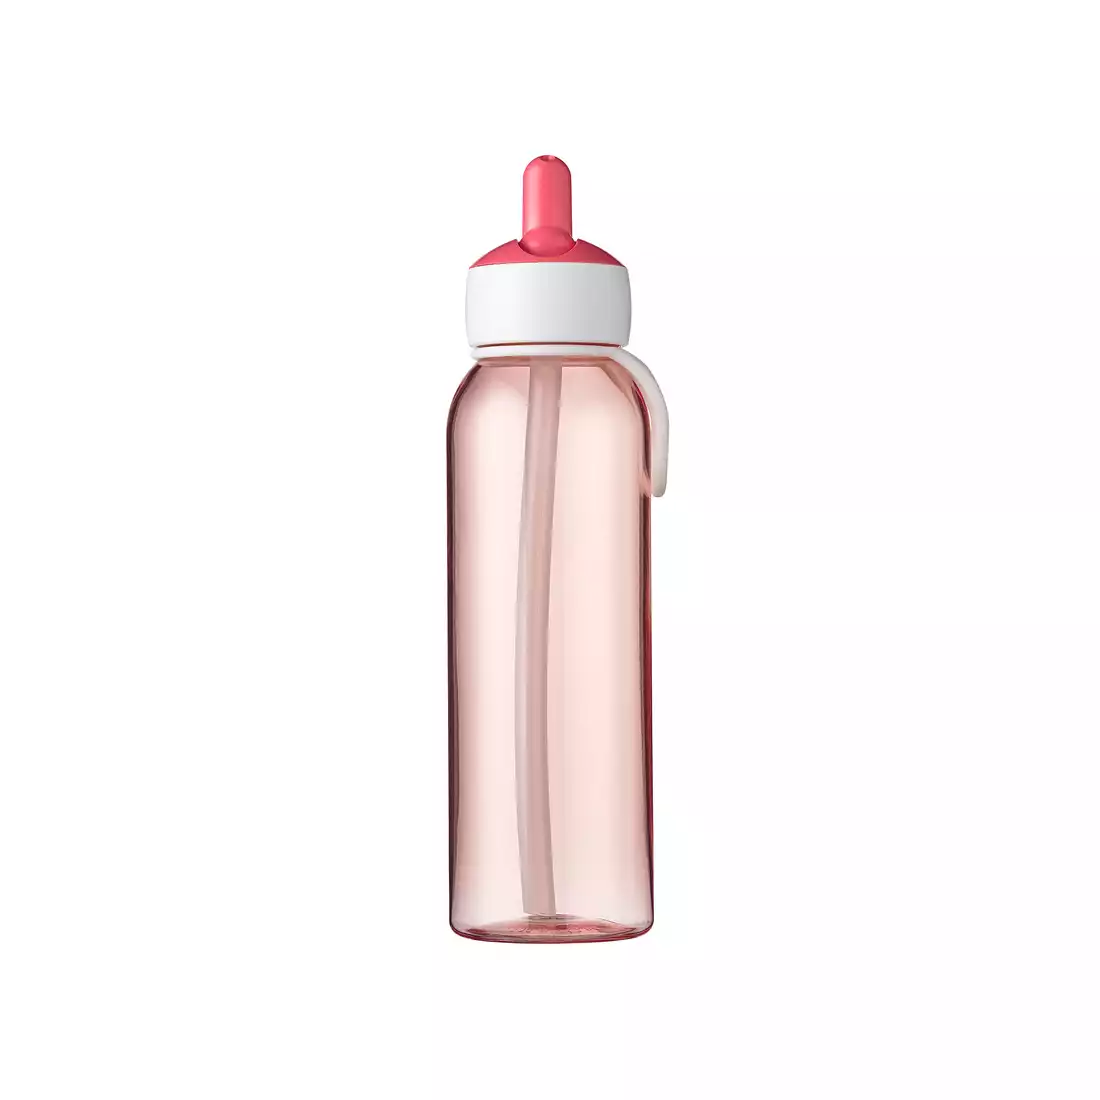 MEPAL FLIP-UP CAMPUS 500 ml láhev na vodu, růžový